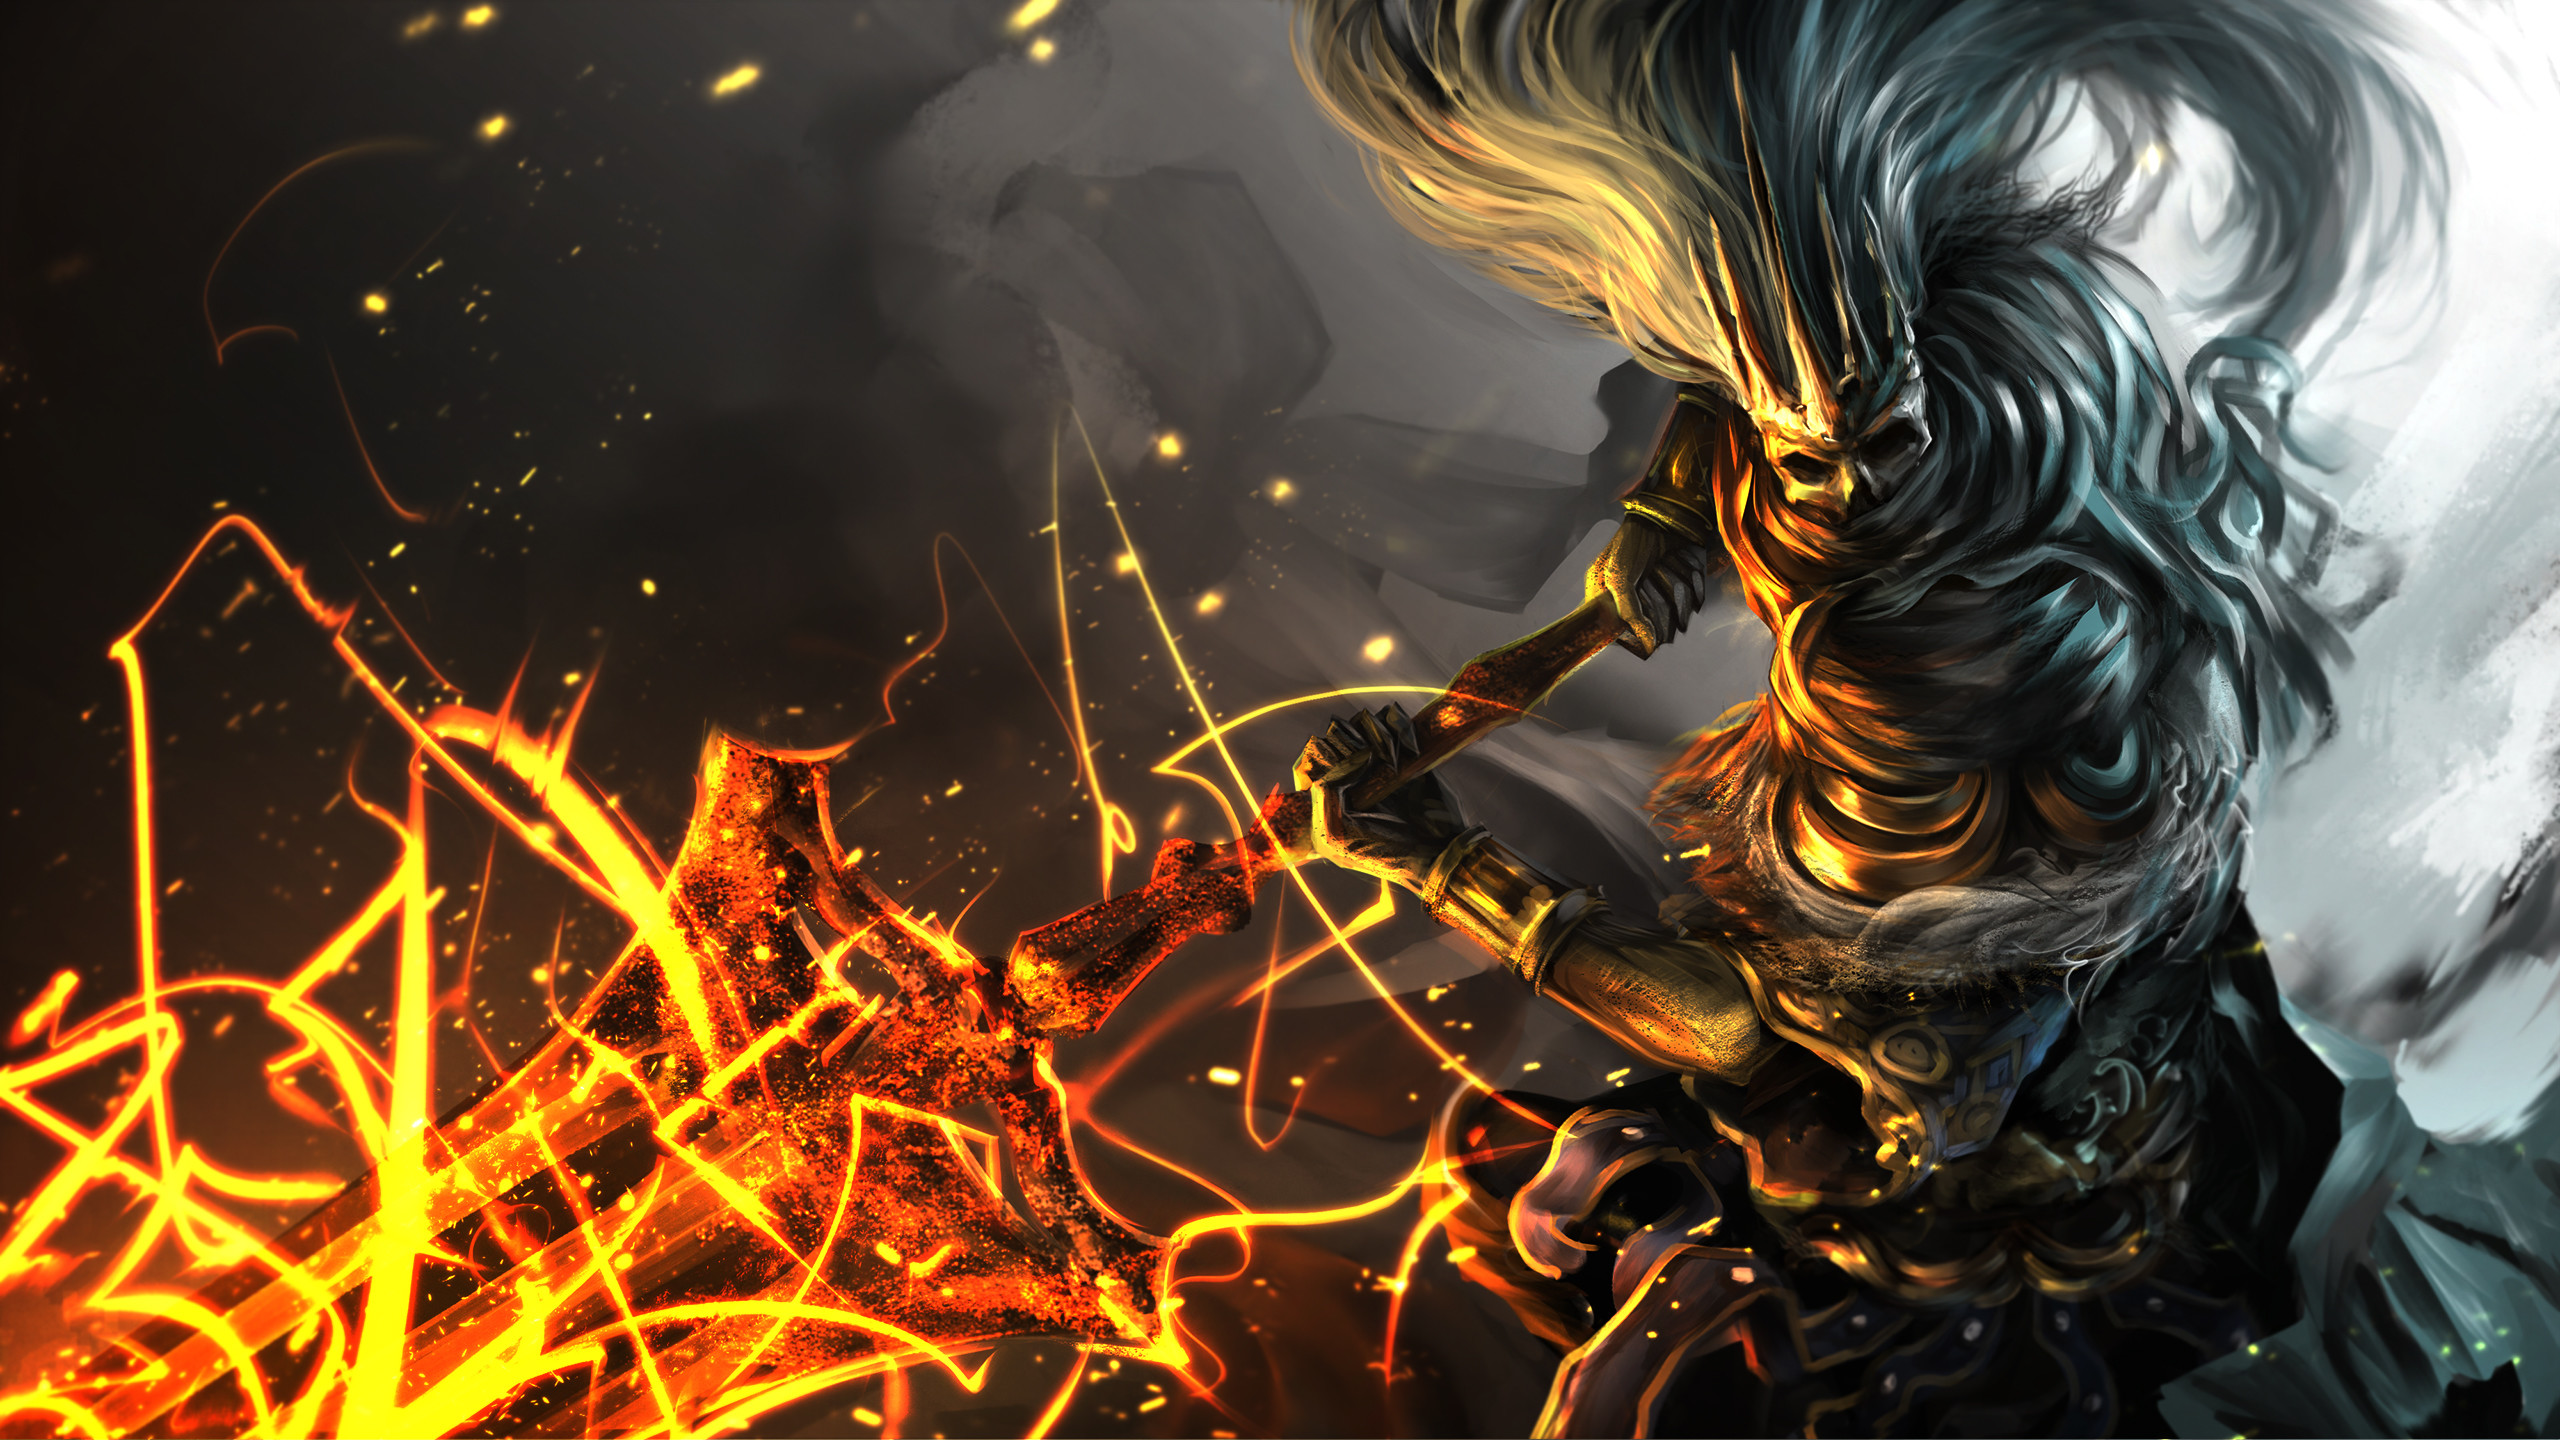 2560x1440 Dark Souls III HD Wallpaper | Hintergrund |  | ID:824522 -  Wallpaper Abyss